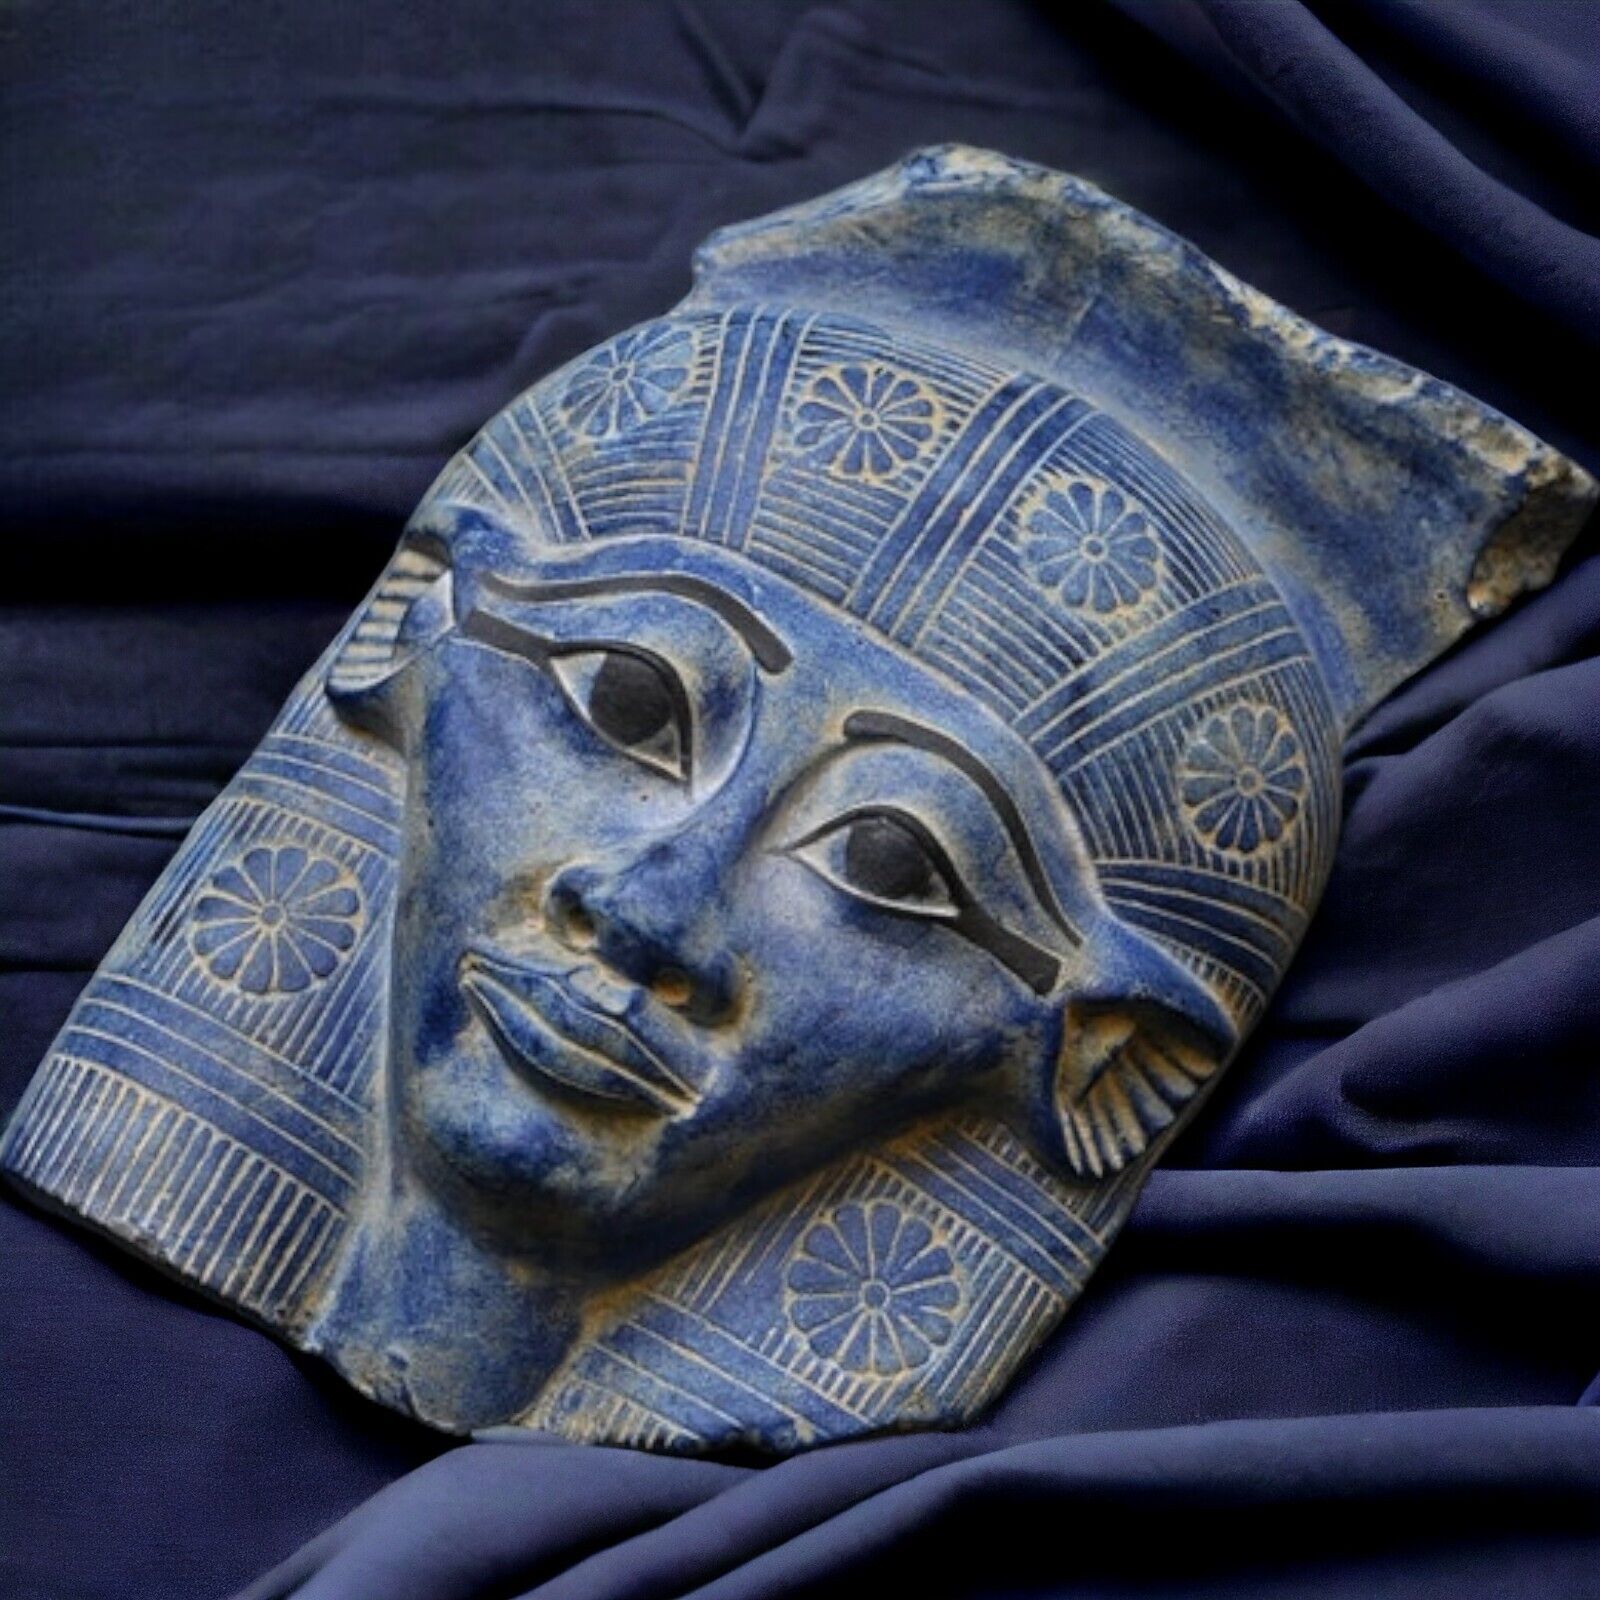 Rare Hathor Mask - Authentic Egyptian Goddess Statue - 25cm - Ancient Mythology